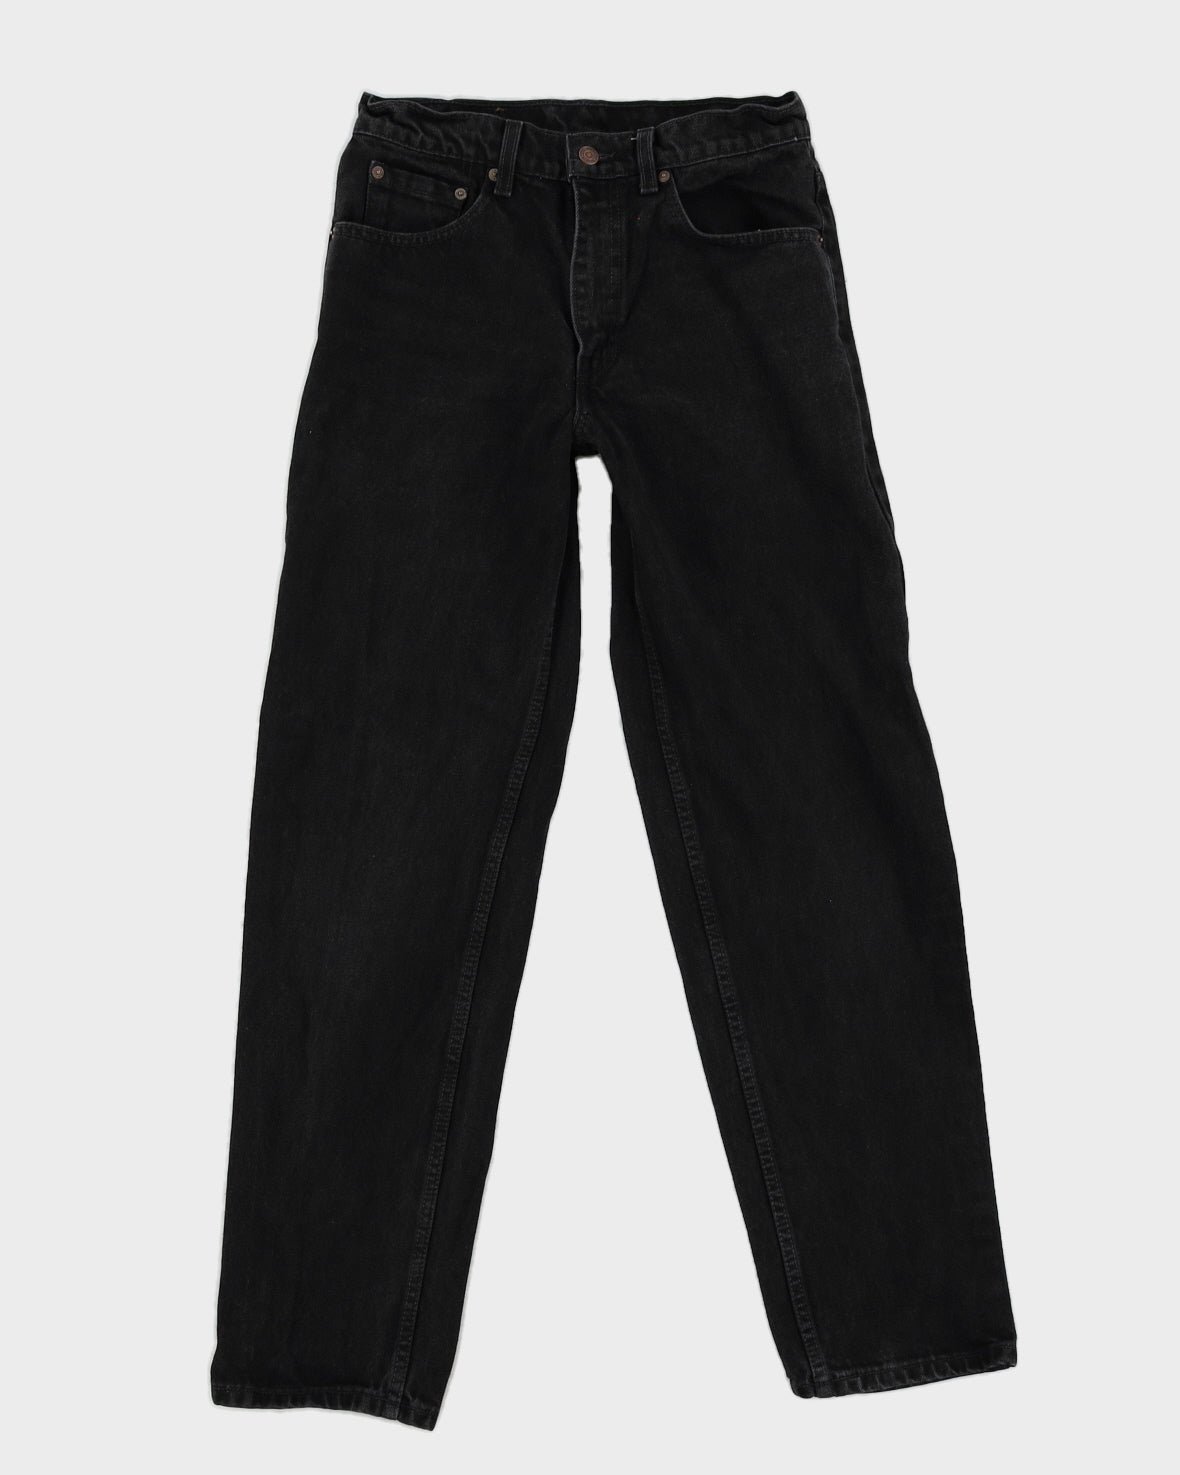 Vintage 80s Levi's Black Jeans - W30 L32